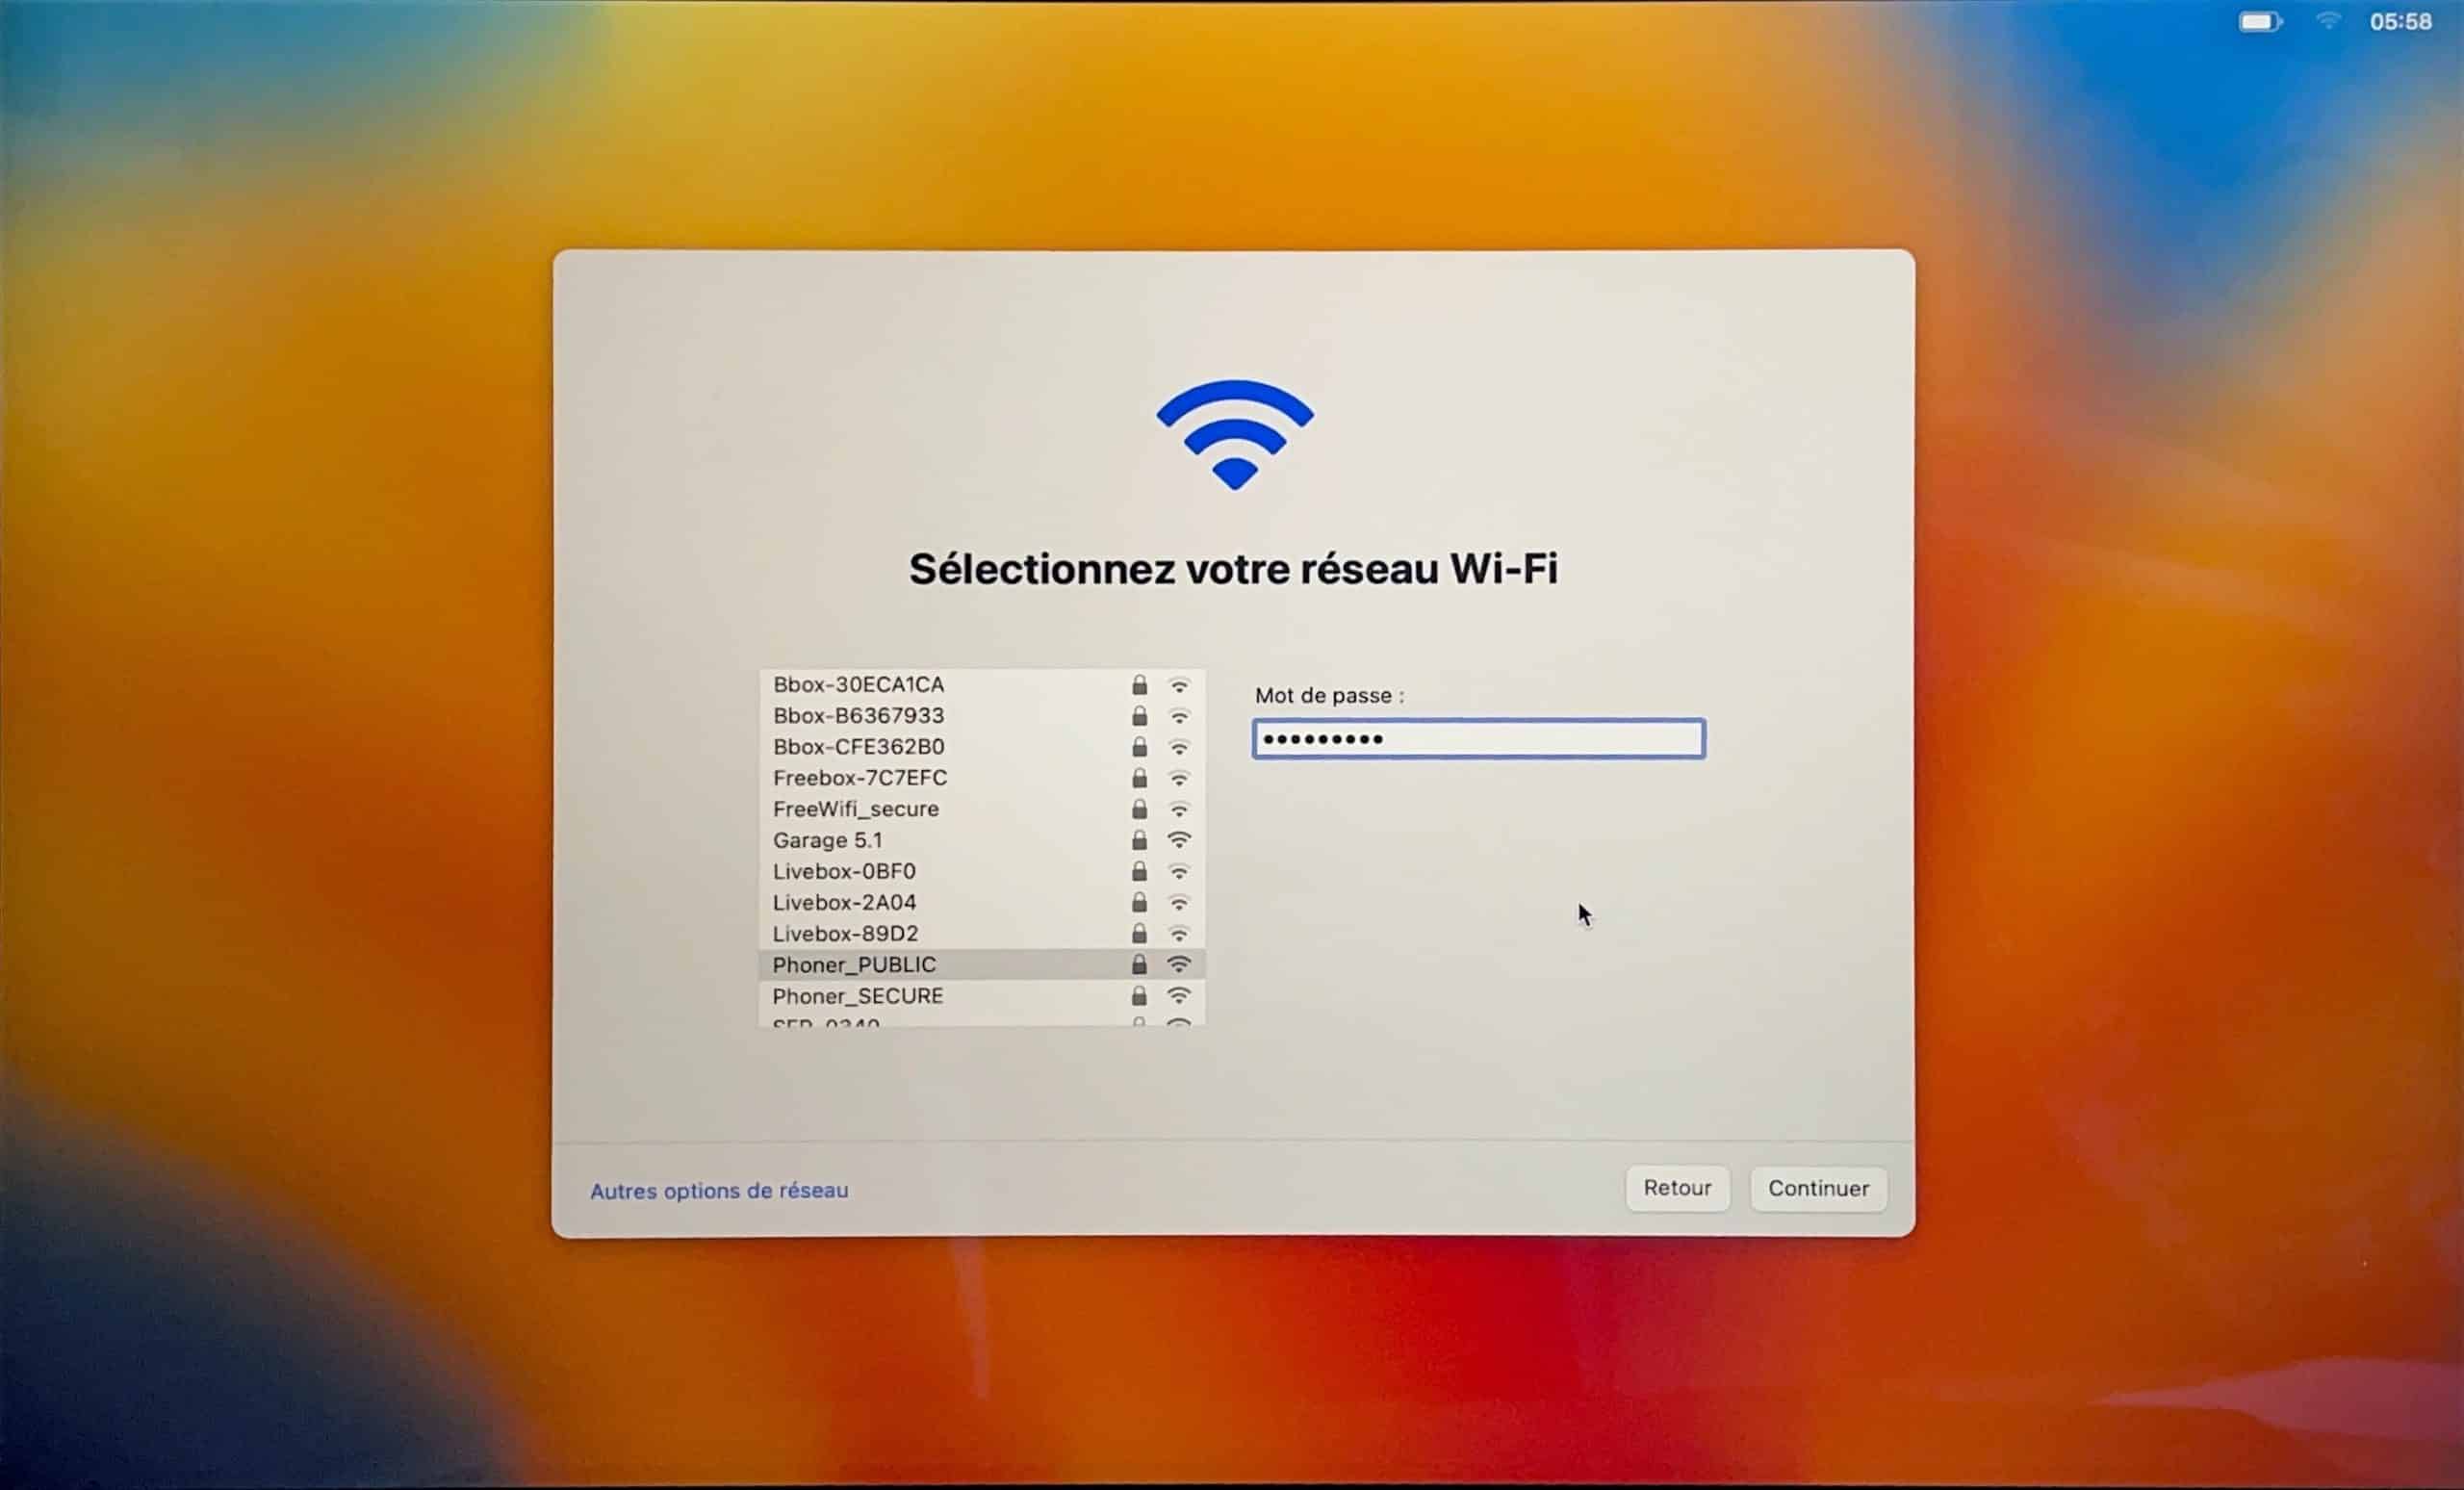 Choix des différents réseau Wi-Fi